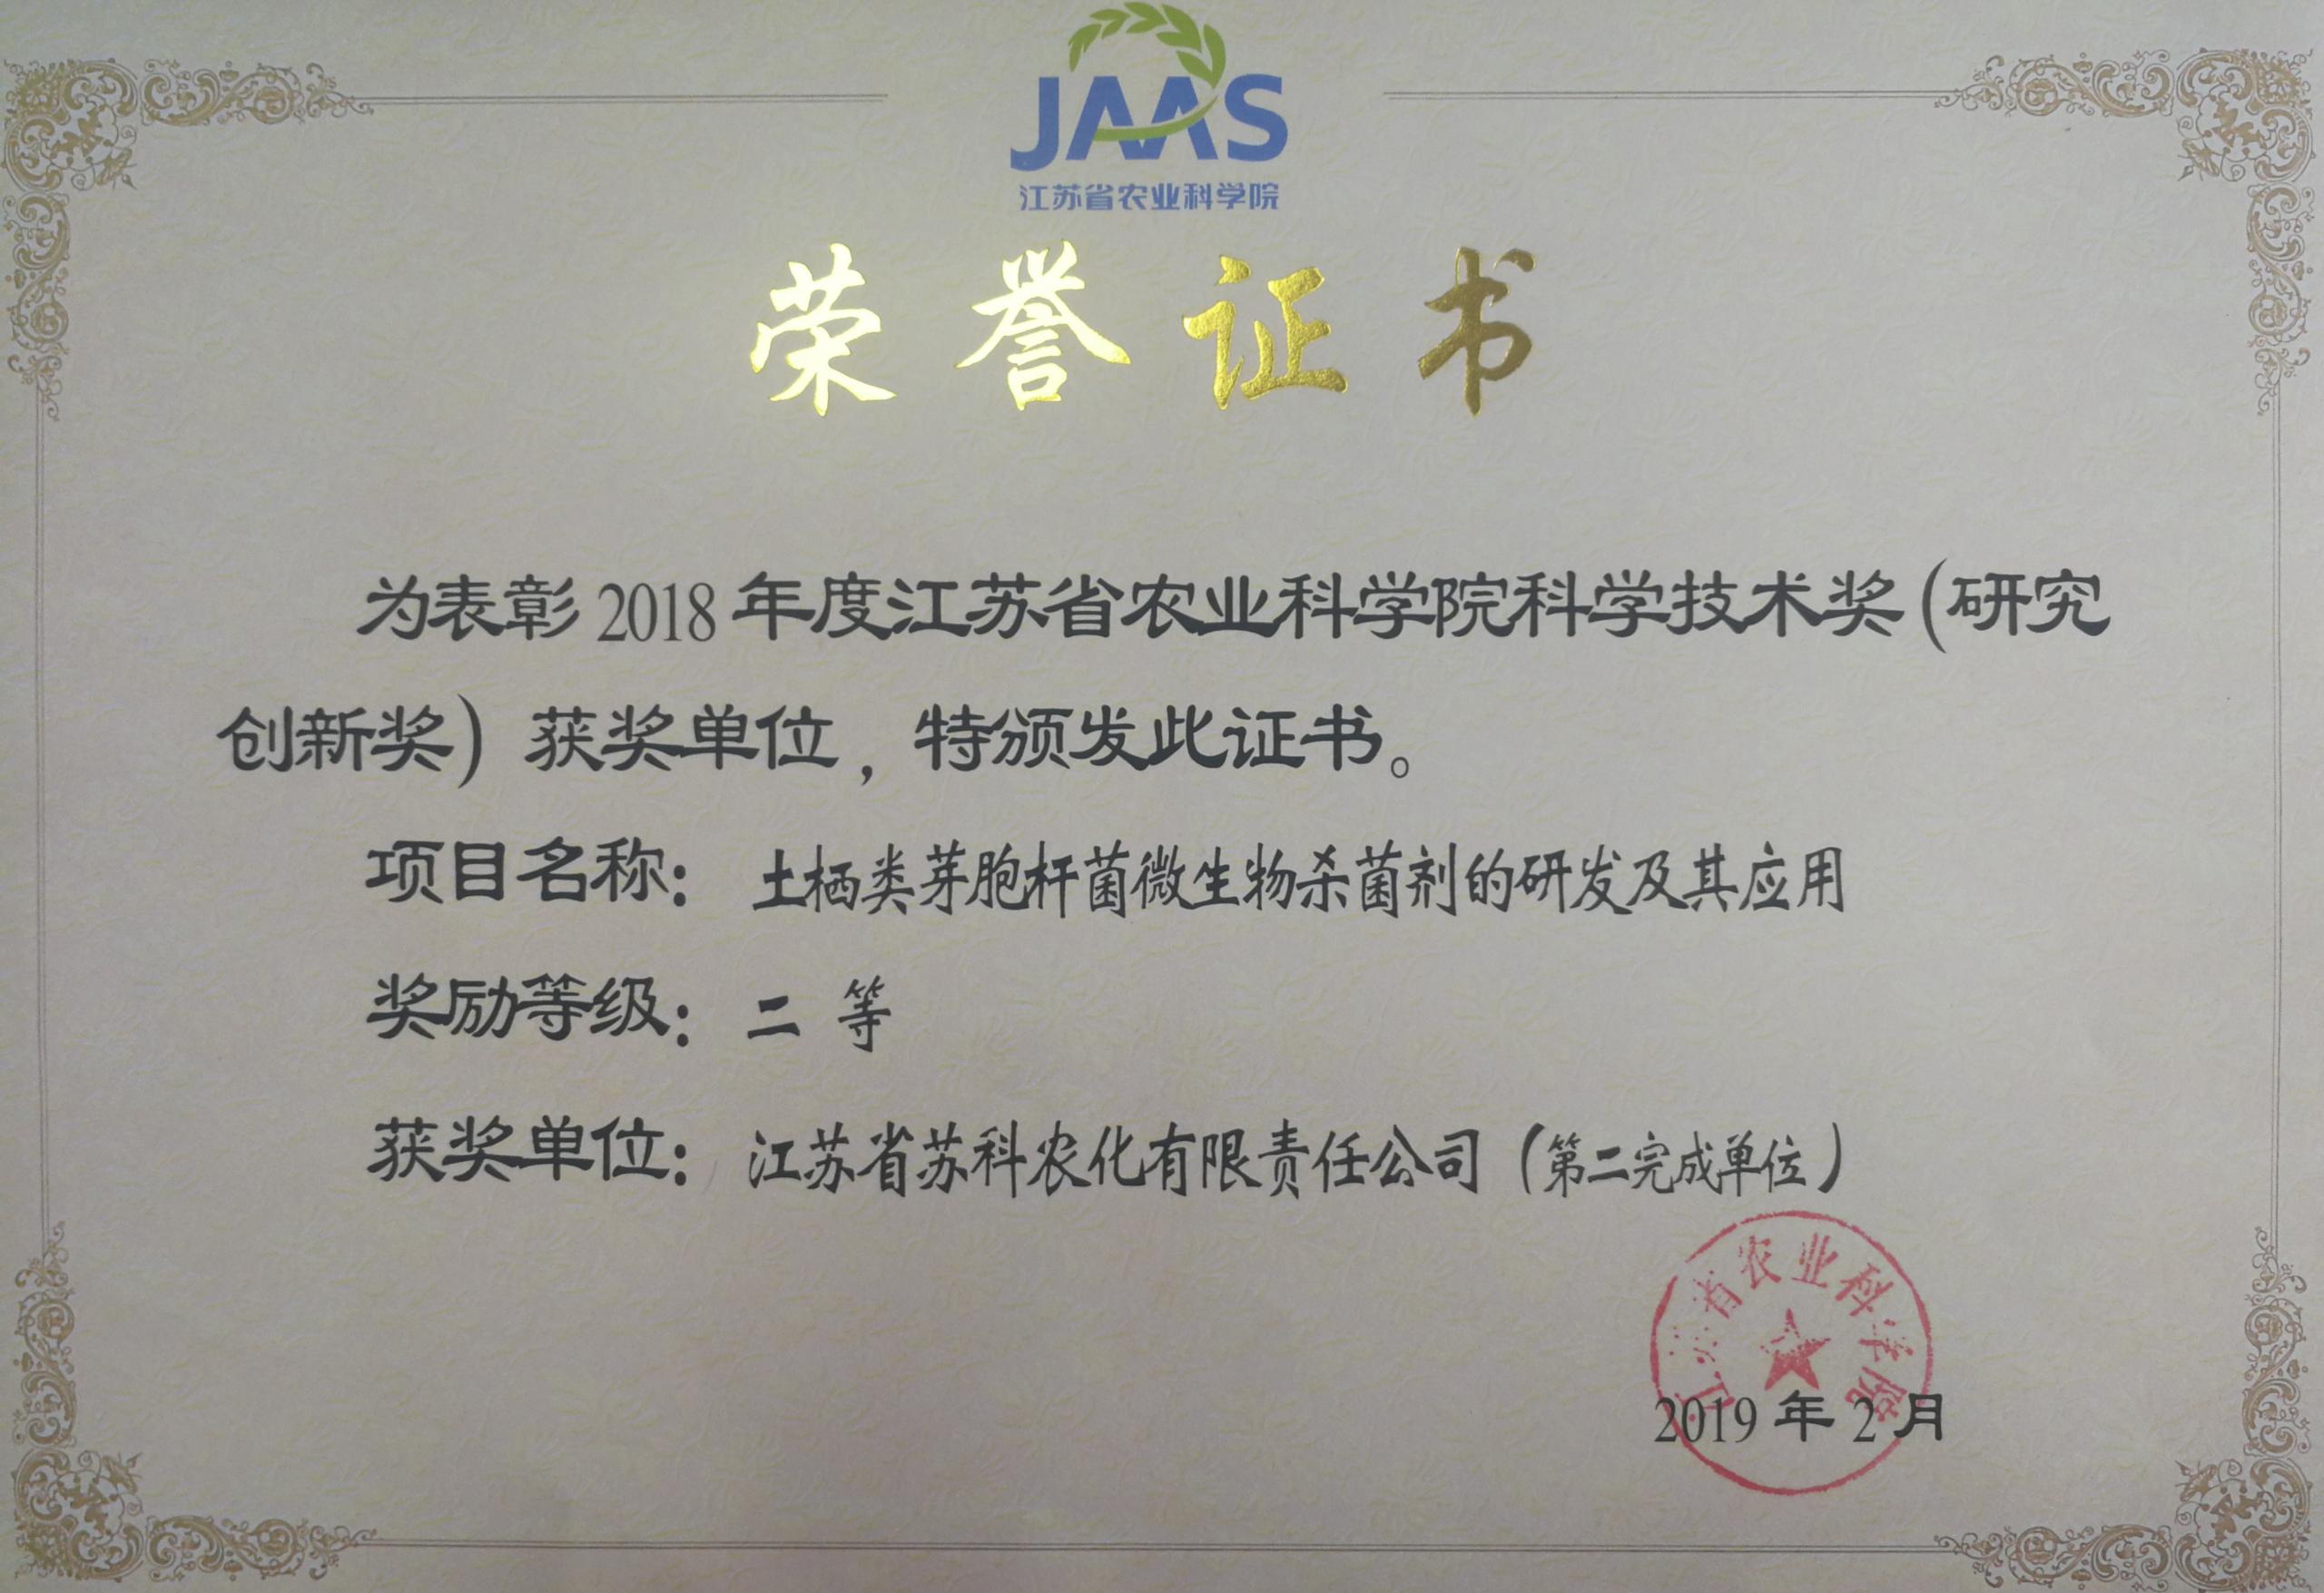 半岛集团(中国)有限公司官网荣获院科学技术二等奖